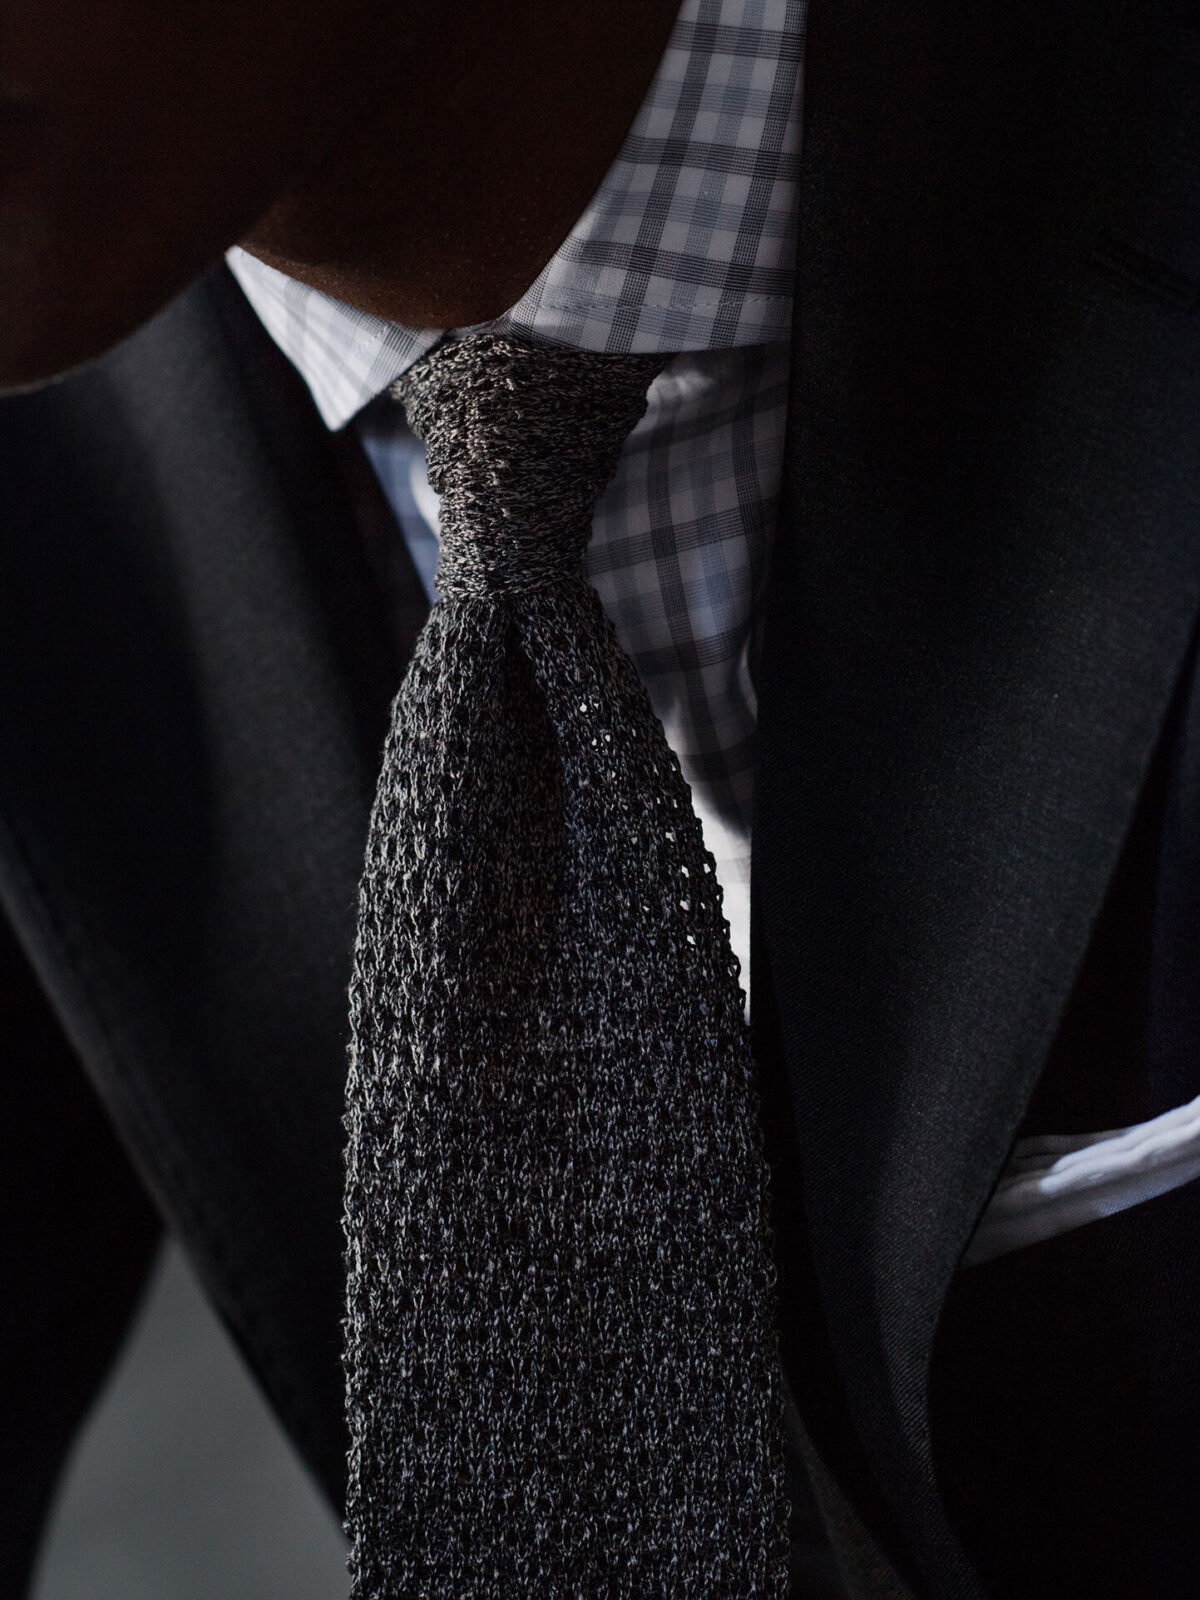 Grey Melange Silk Knit Tie